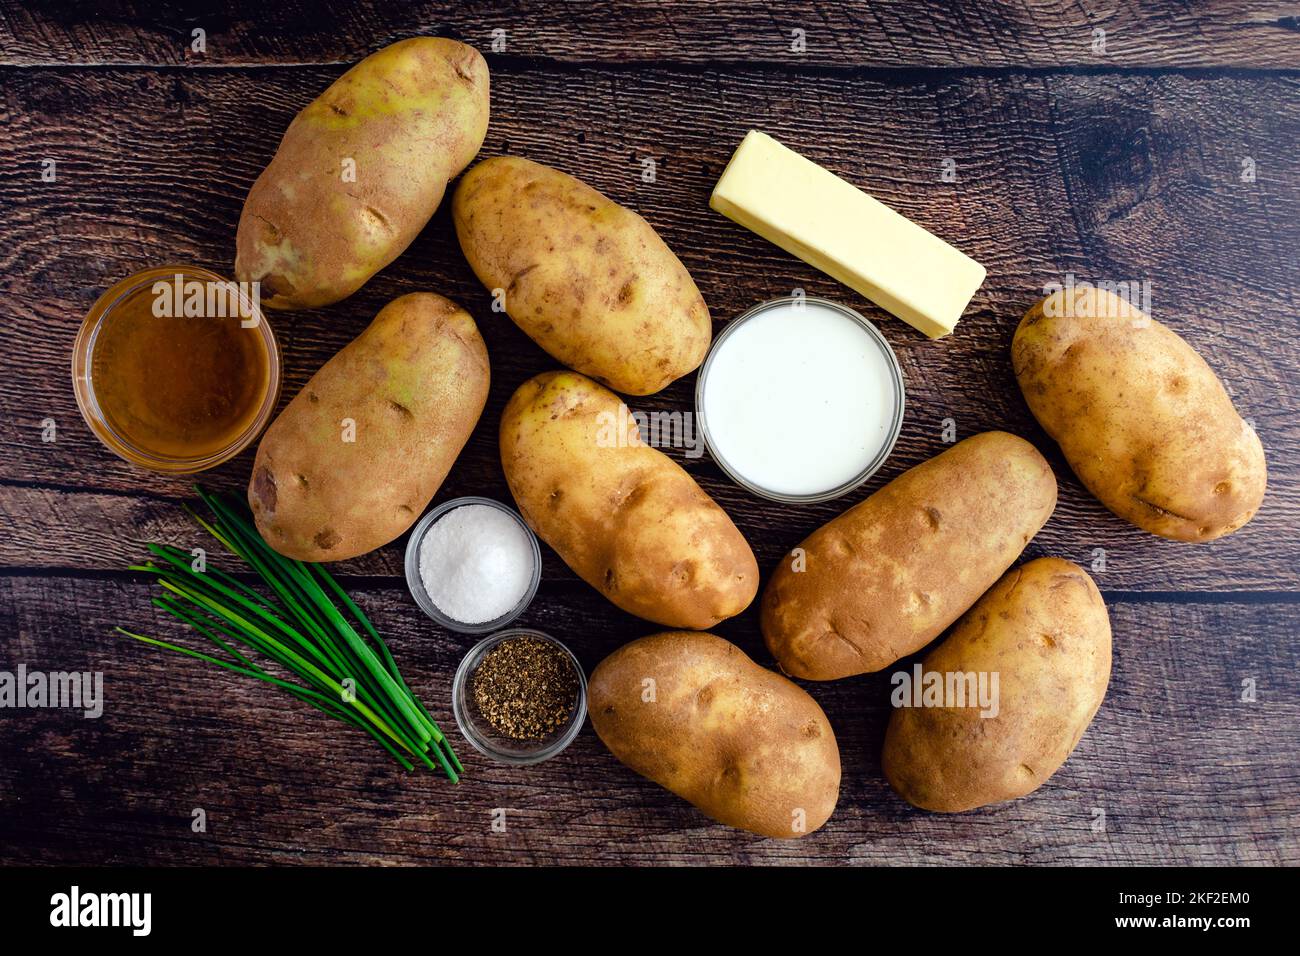 Ingrédients de pommes de terre écrasés sur une table rustique en bois : pommes de terre Russet, crème, beurre et autres ingrédients pour le plat de pommes de terre écrasé Banque D'Images